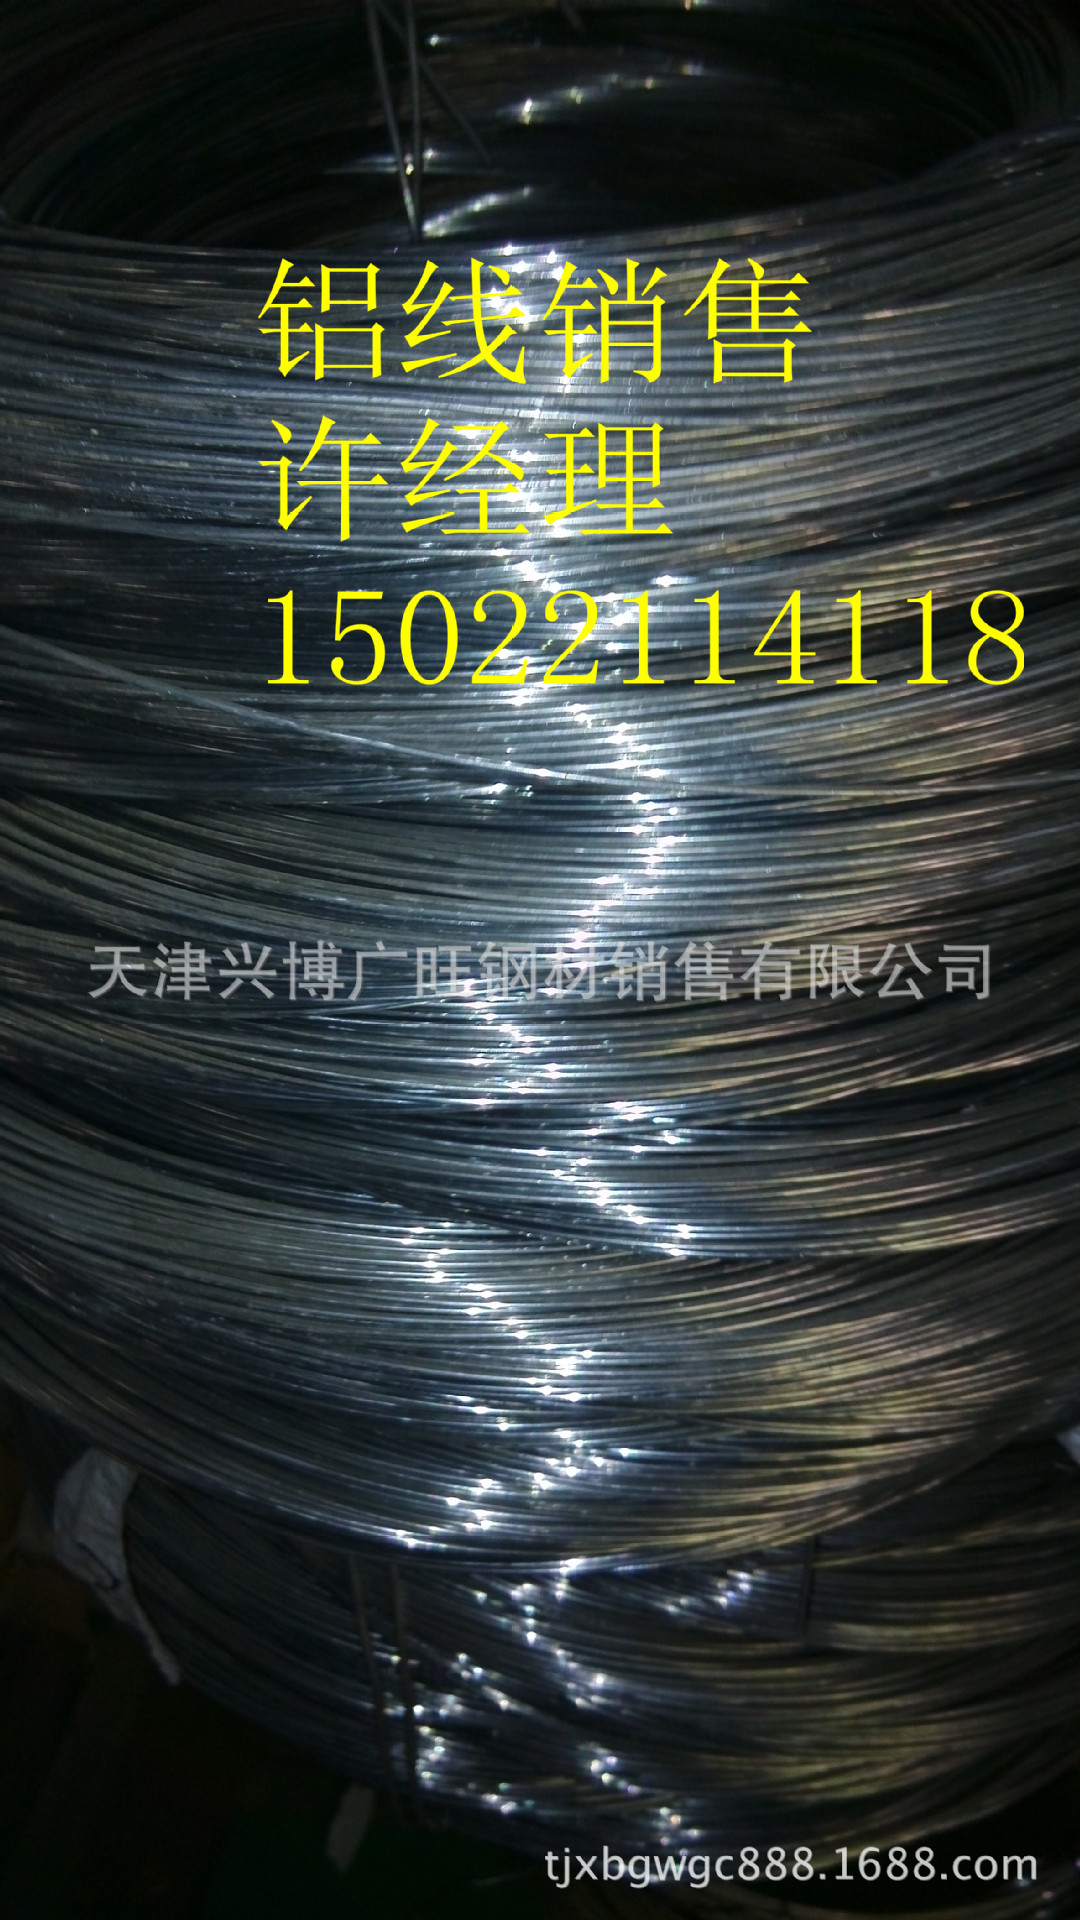 鋁線銷售15022114118